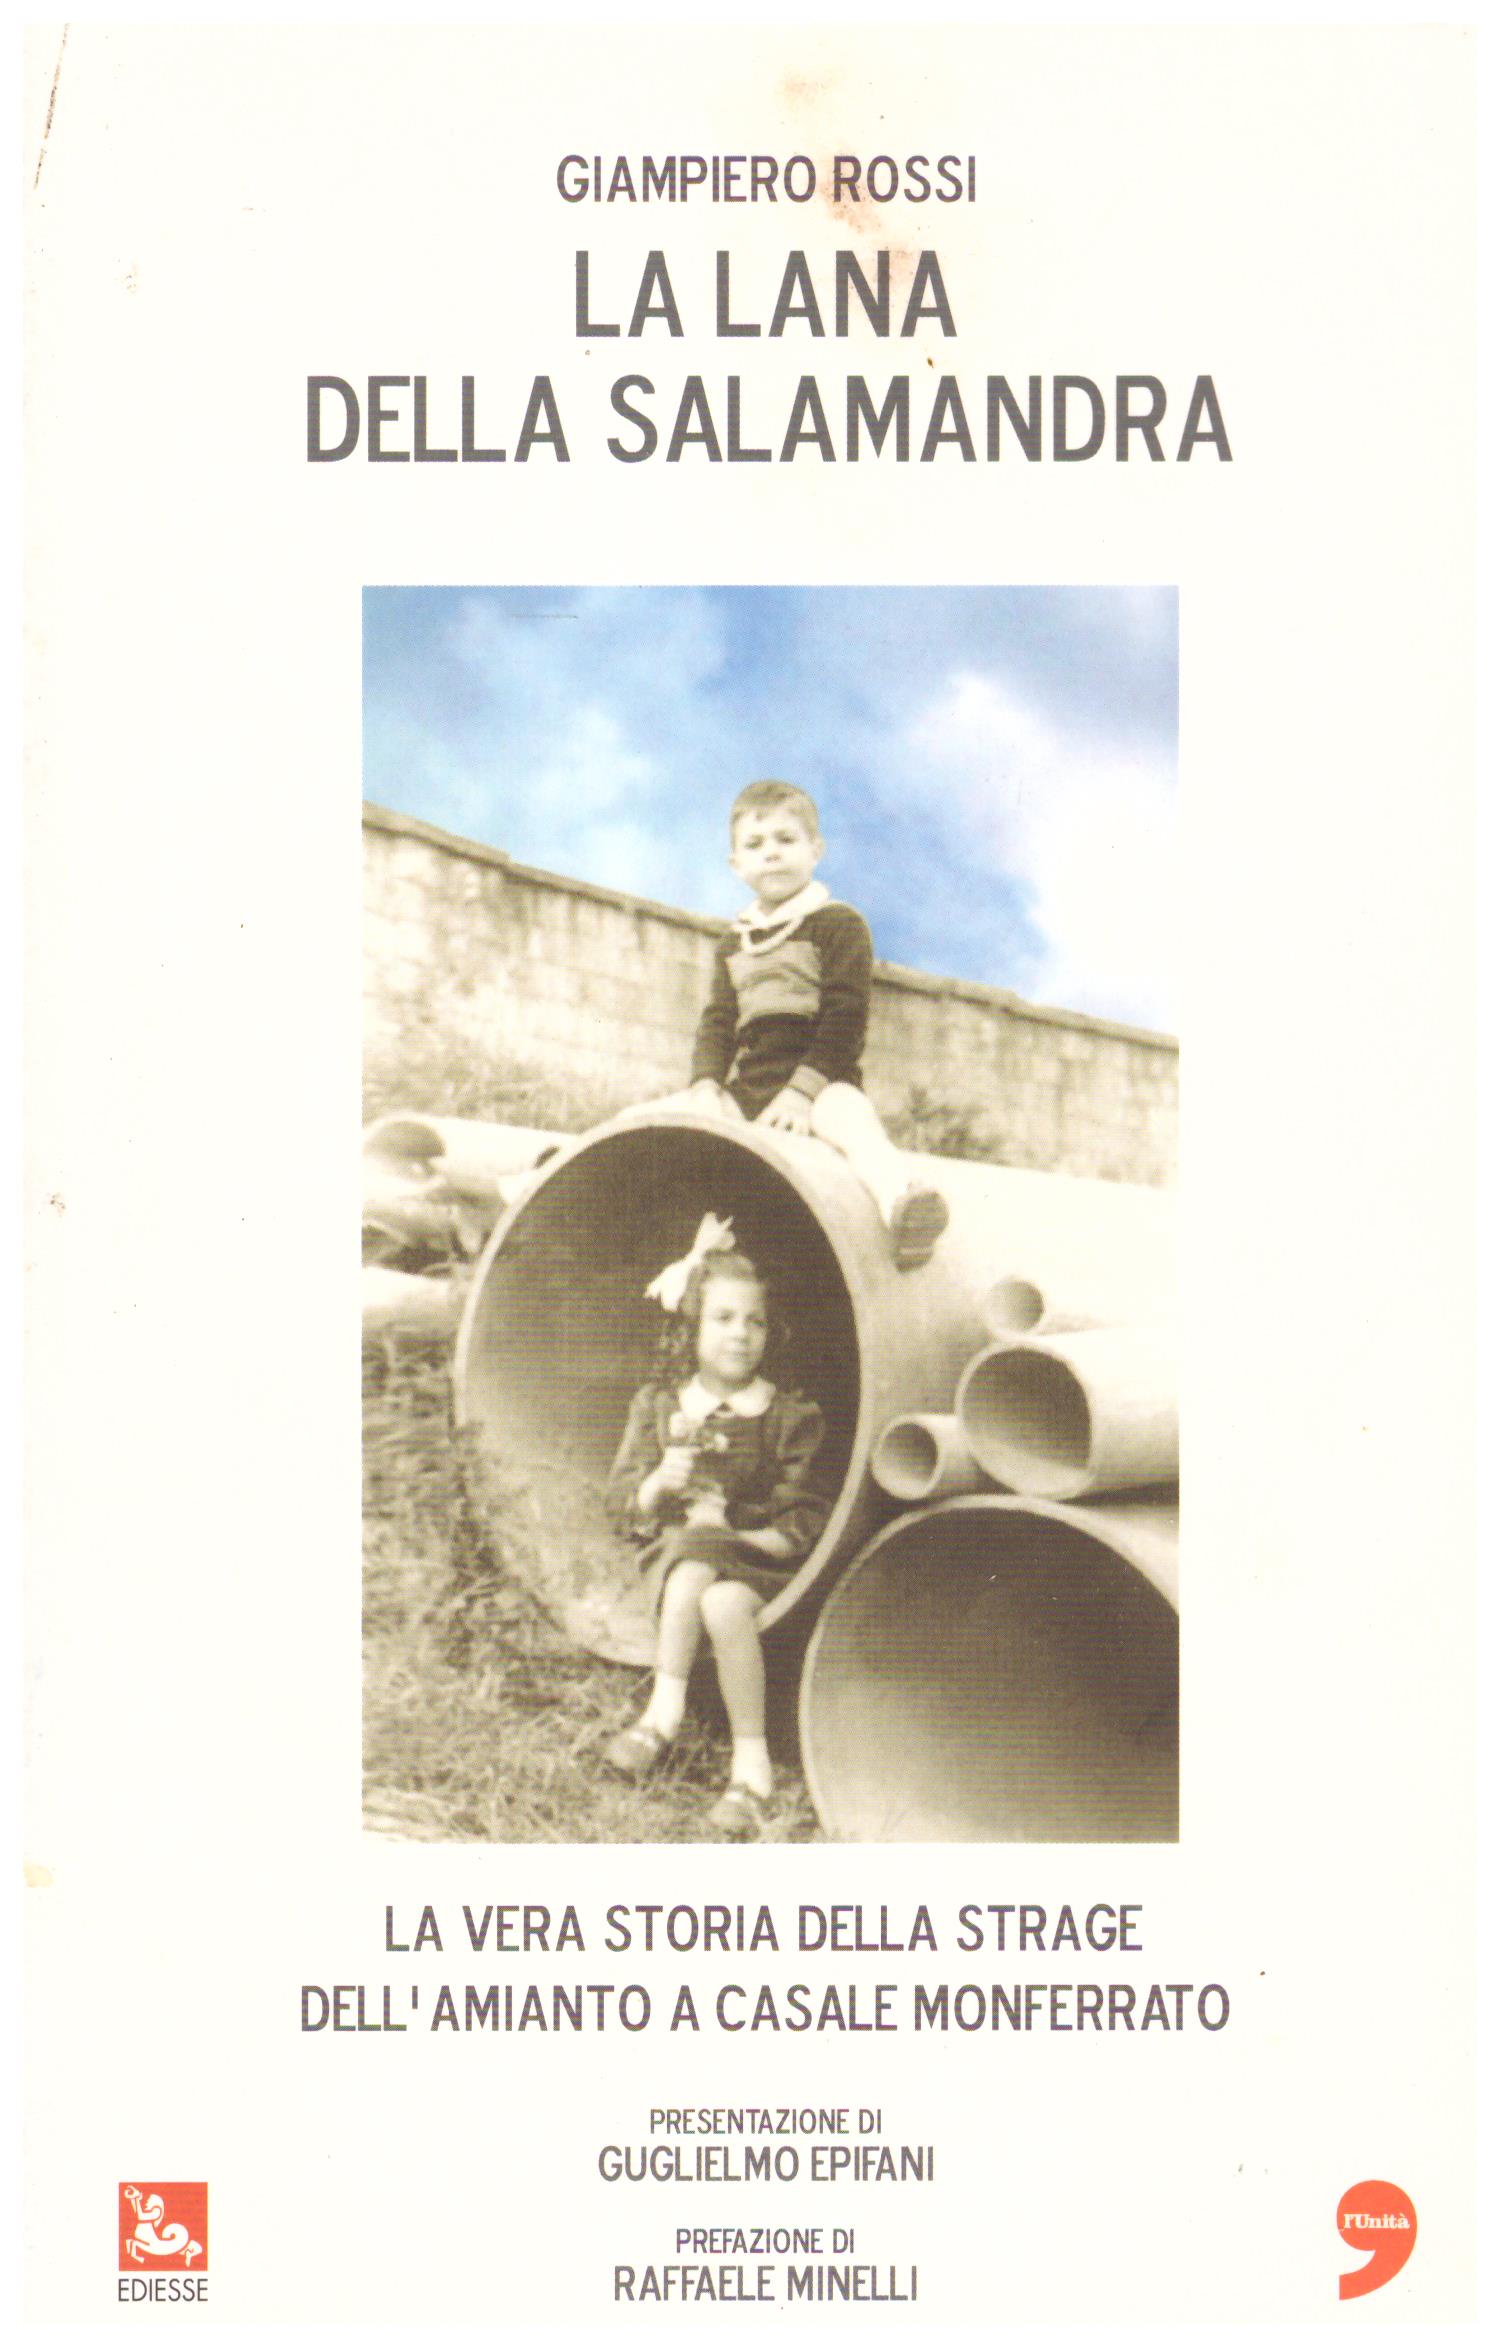 Titolo: La lana della salamandra Autore: Giampiero Rossi Editore: ediesse 2008